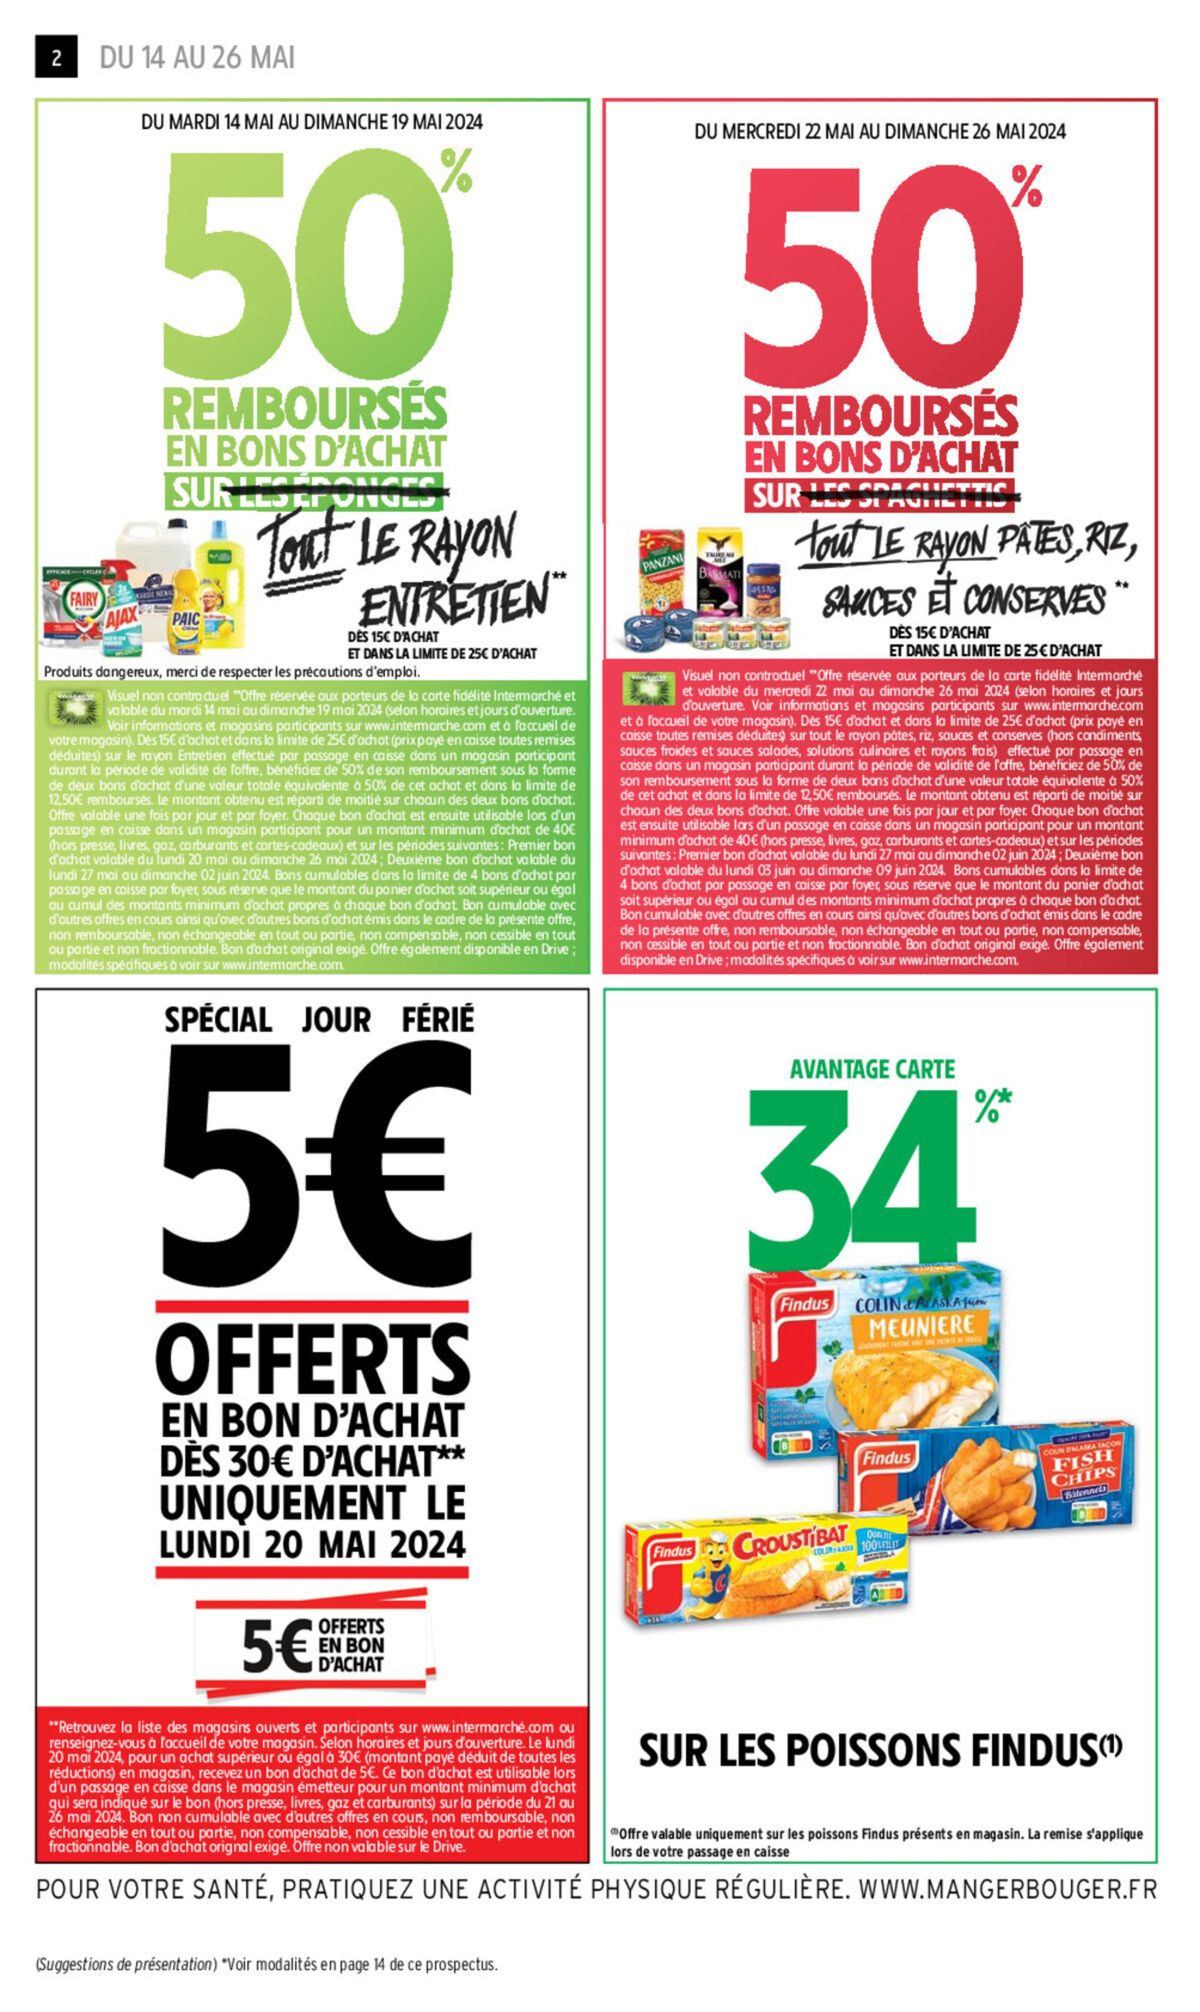 Catalogue 50% REMBOURSÉS EN BONS D'ACHAT, page 00012